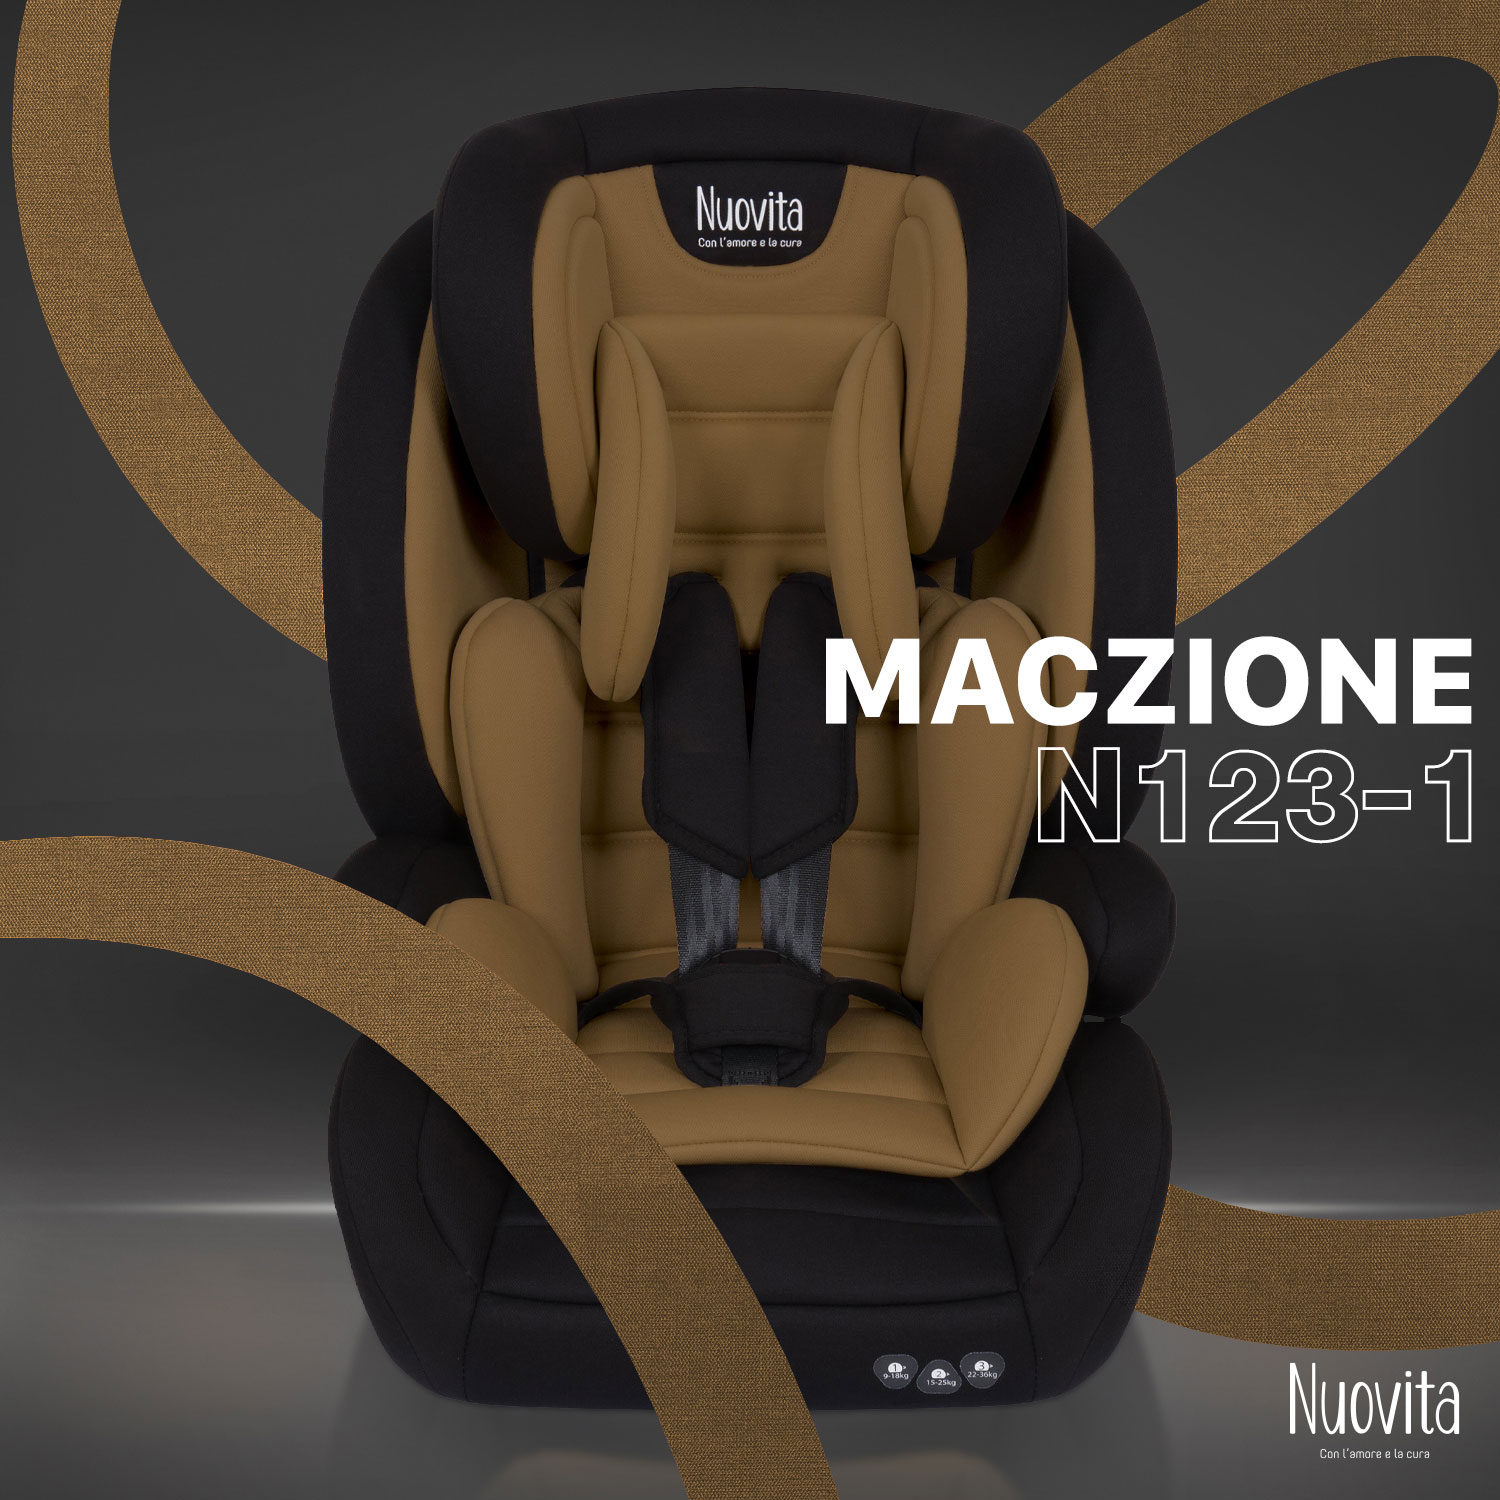 Детское автокресло трансформер Nuovita Maczione N123-1, группа 1-2-3, 9-36 кг (Кофейный) автокресло nuovita maczione n123 1